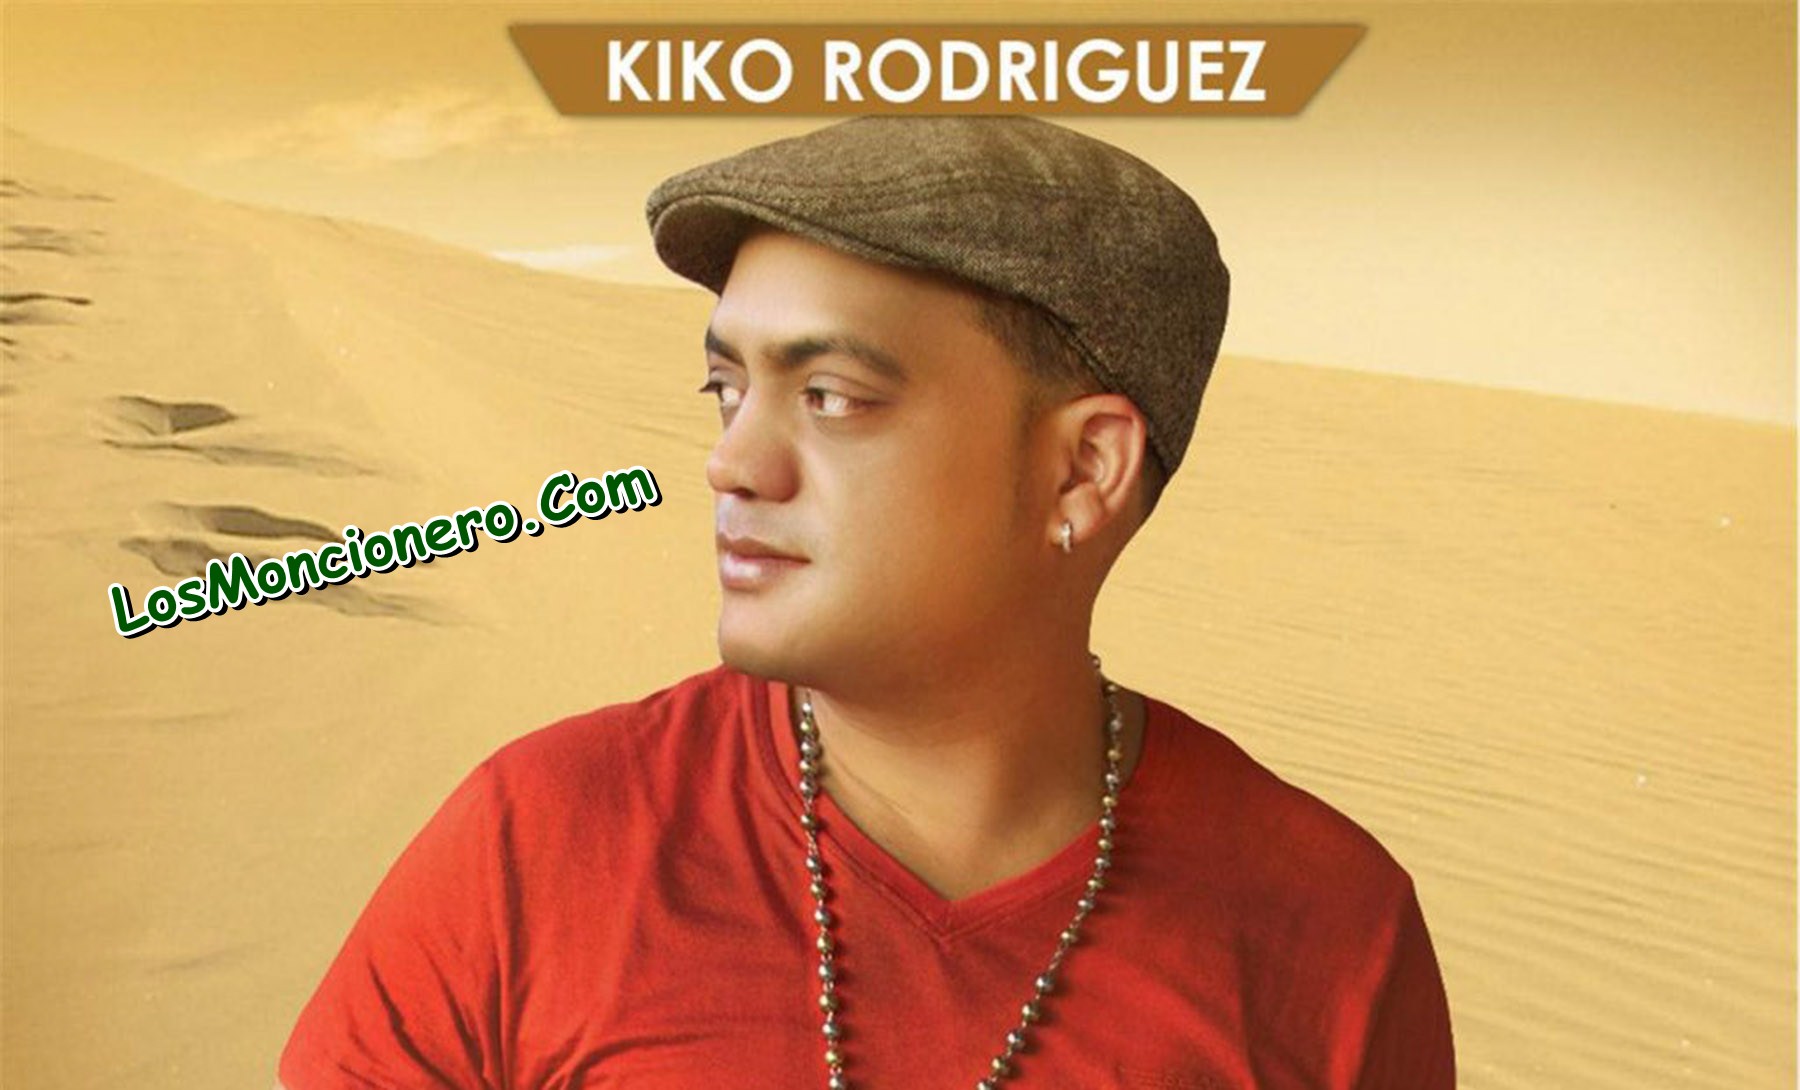 Kiko rodriguez concert